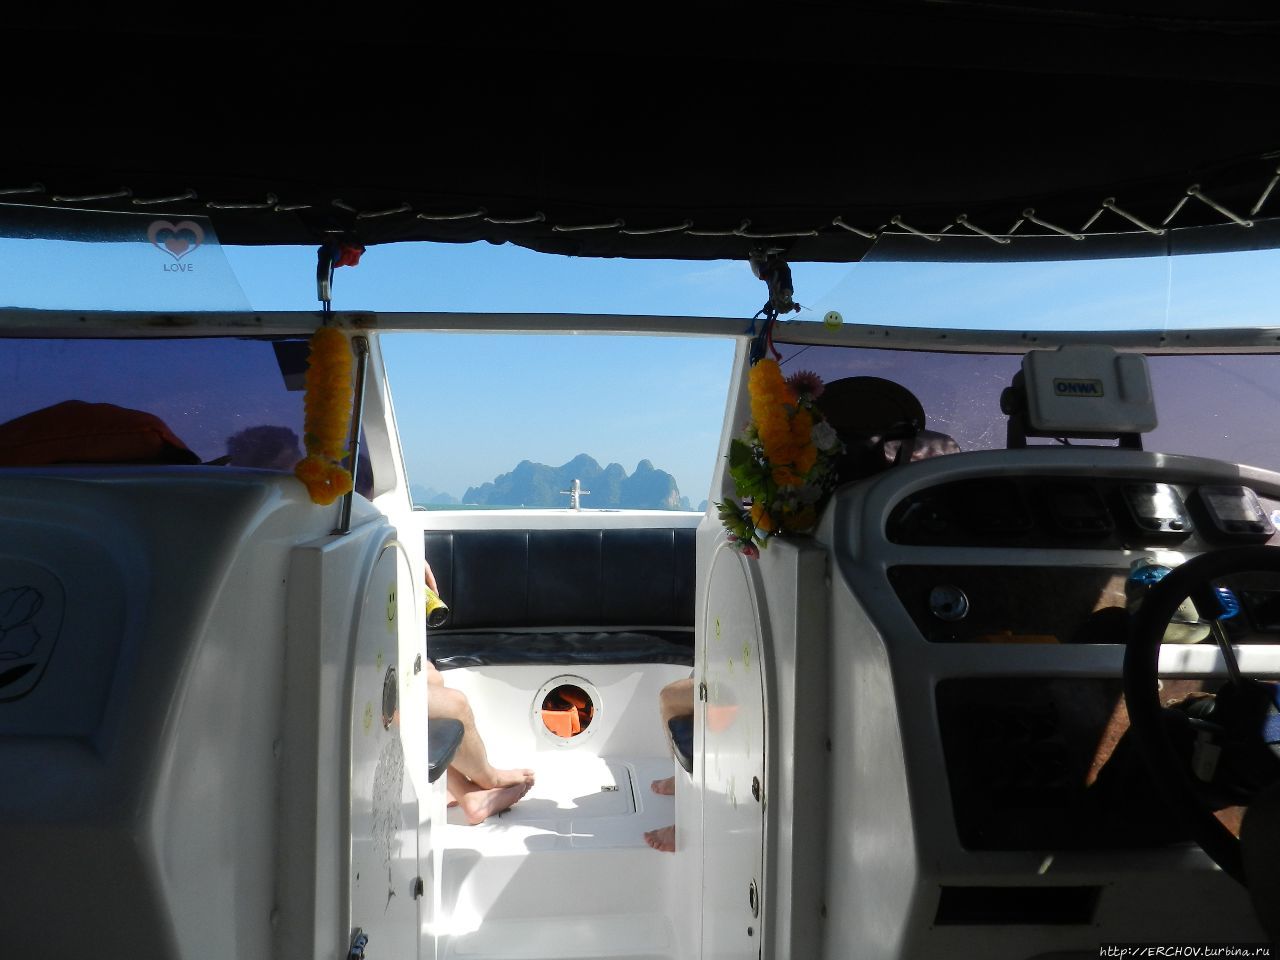 Экскурсия по островам. Ч-1. Остров Джеймса Бонда Пханг-Нга, Таиланд